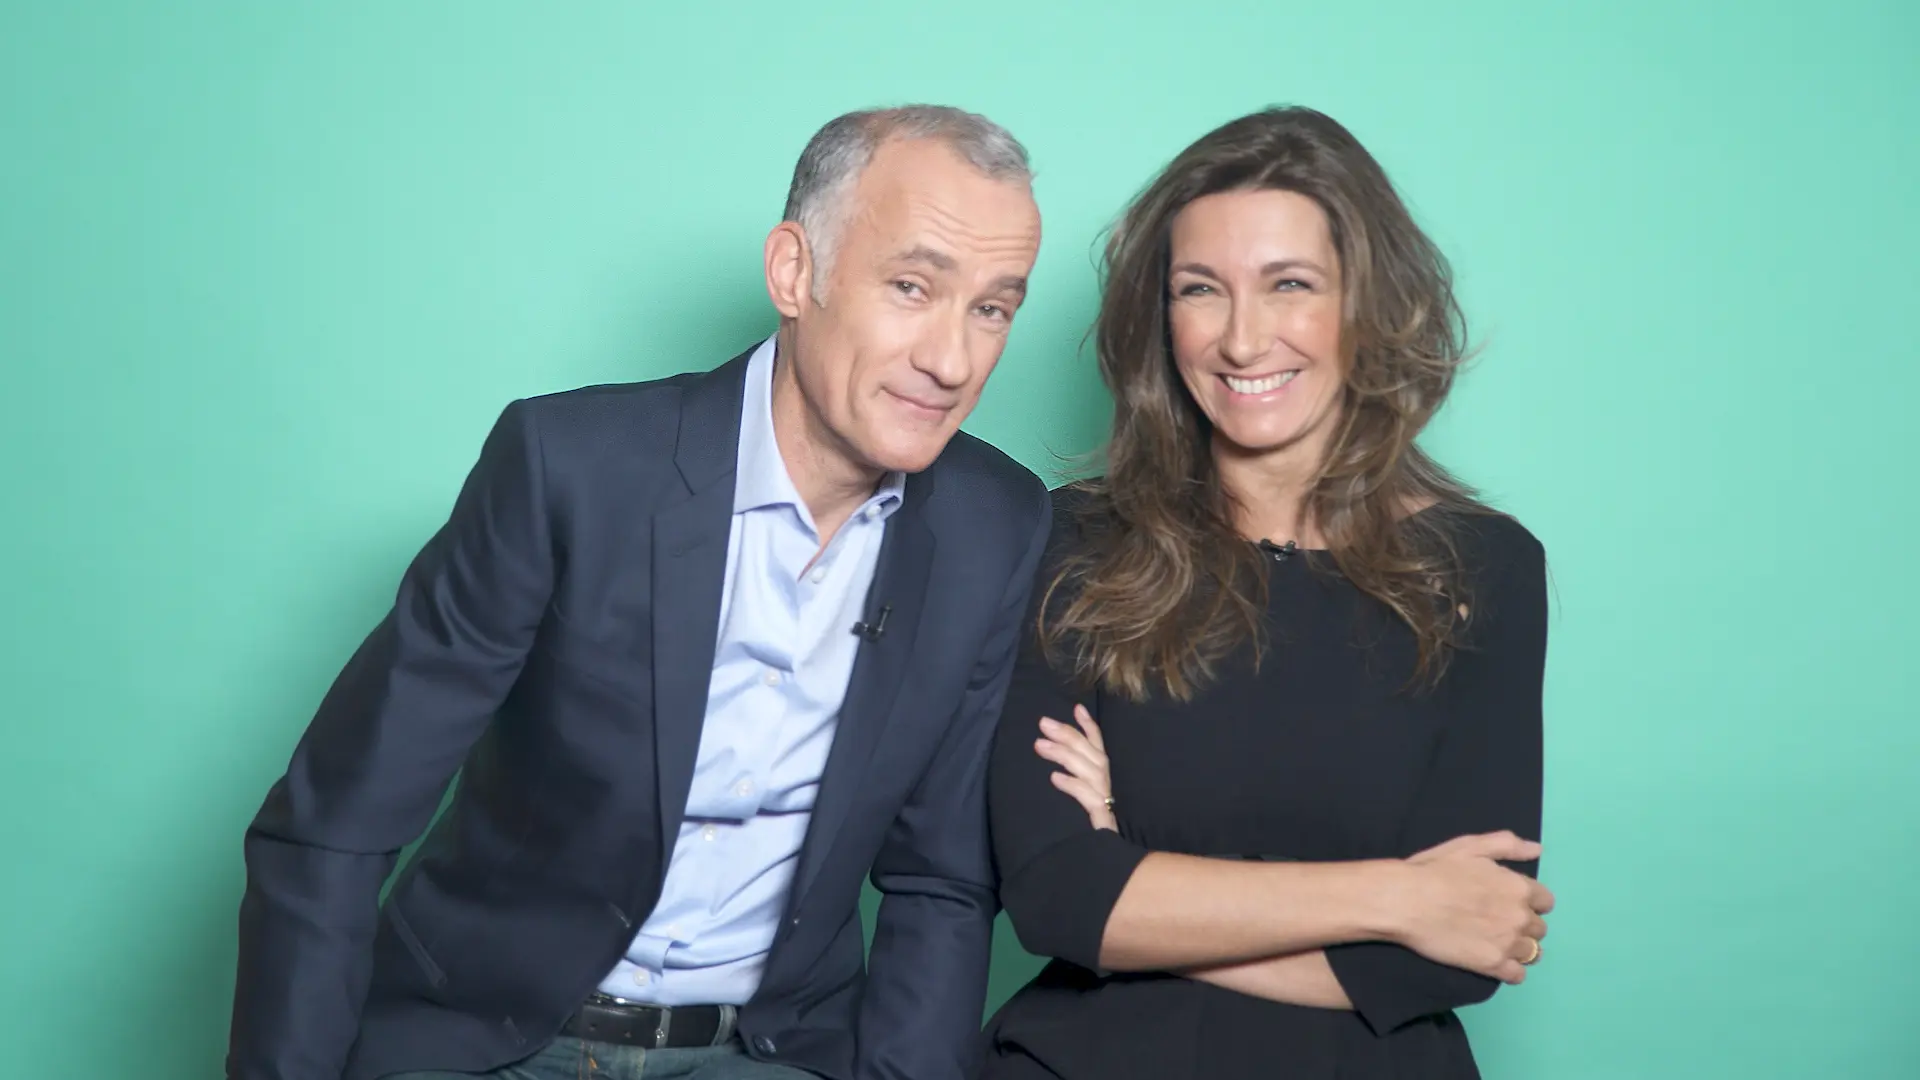 Vidéo : Behind the news avec Anne-Claire Coudray et Gilles Bouleau